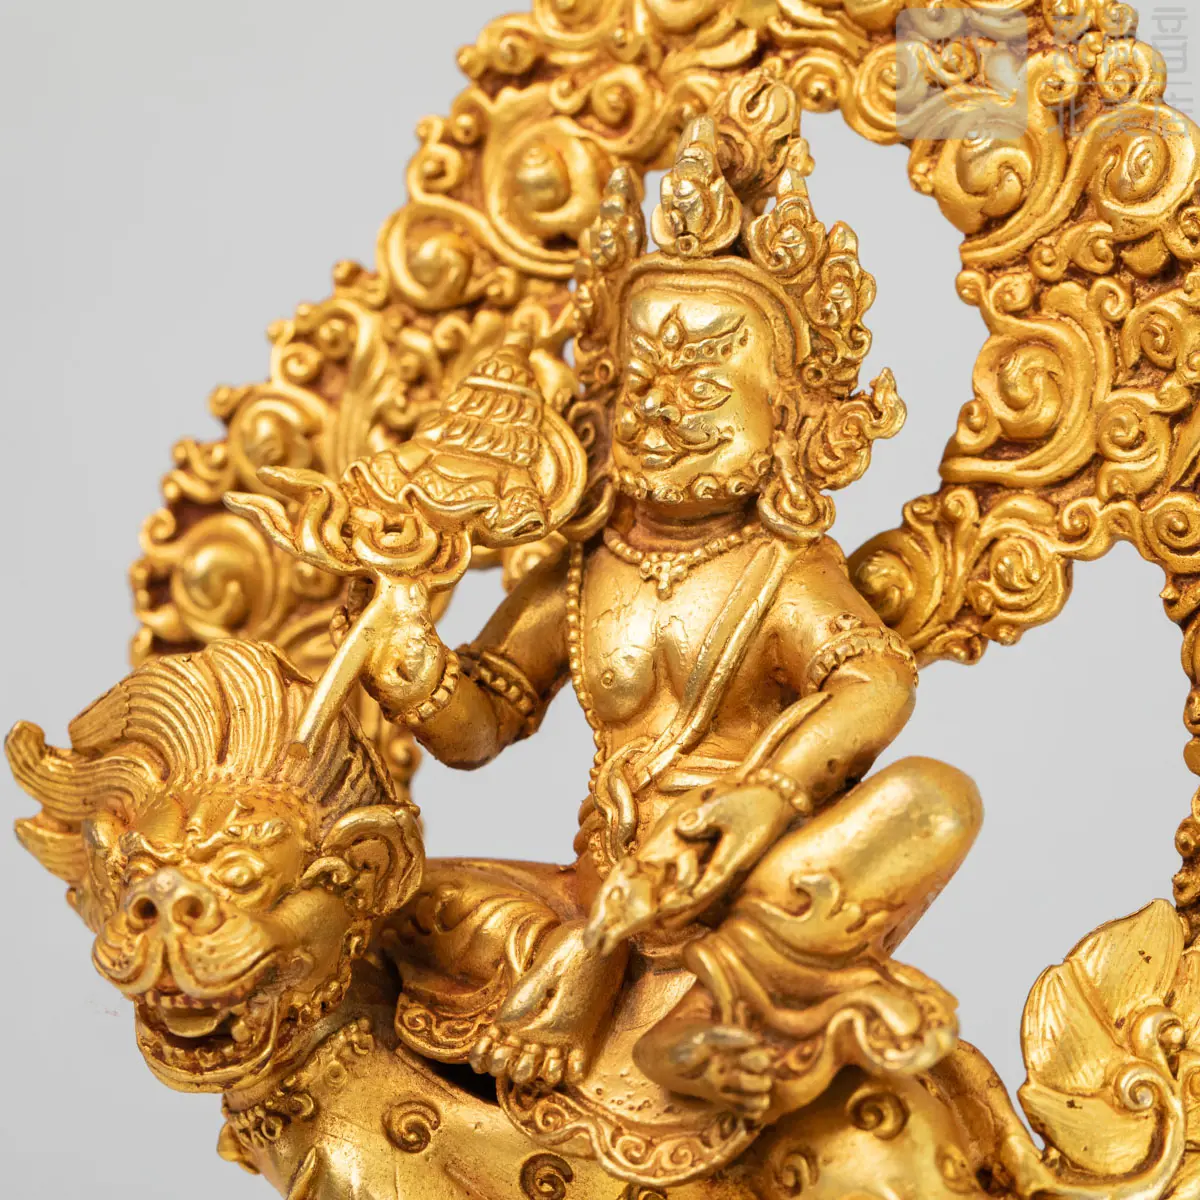 銅鍍金黃財神像- 菩提禪修學院